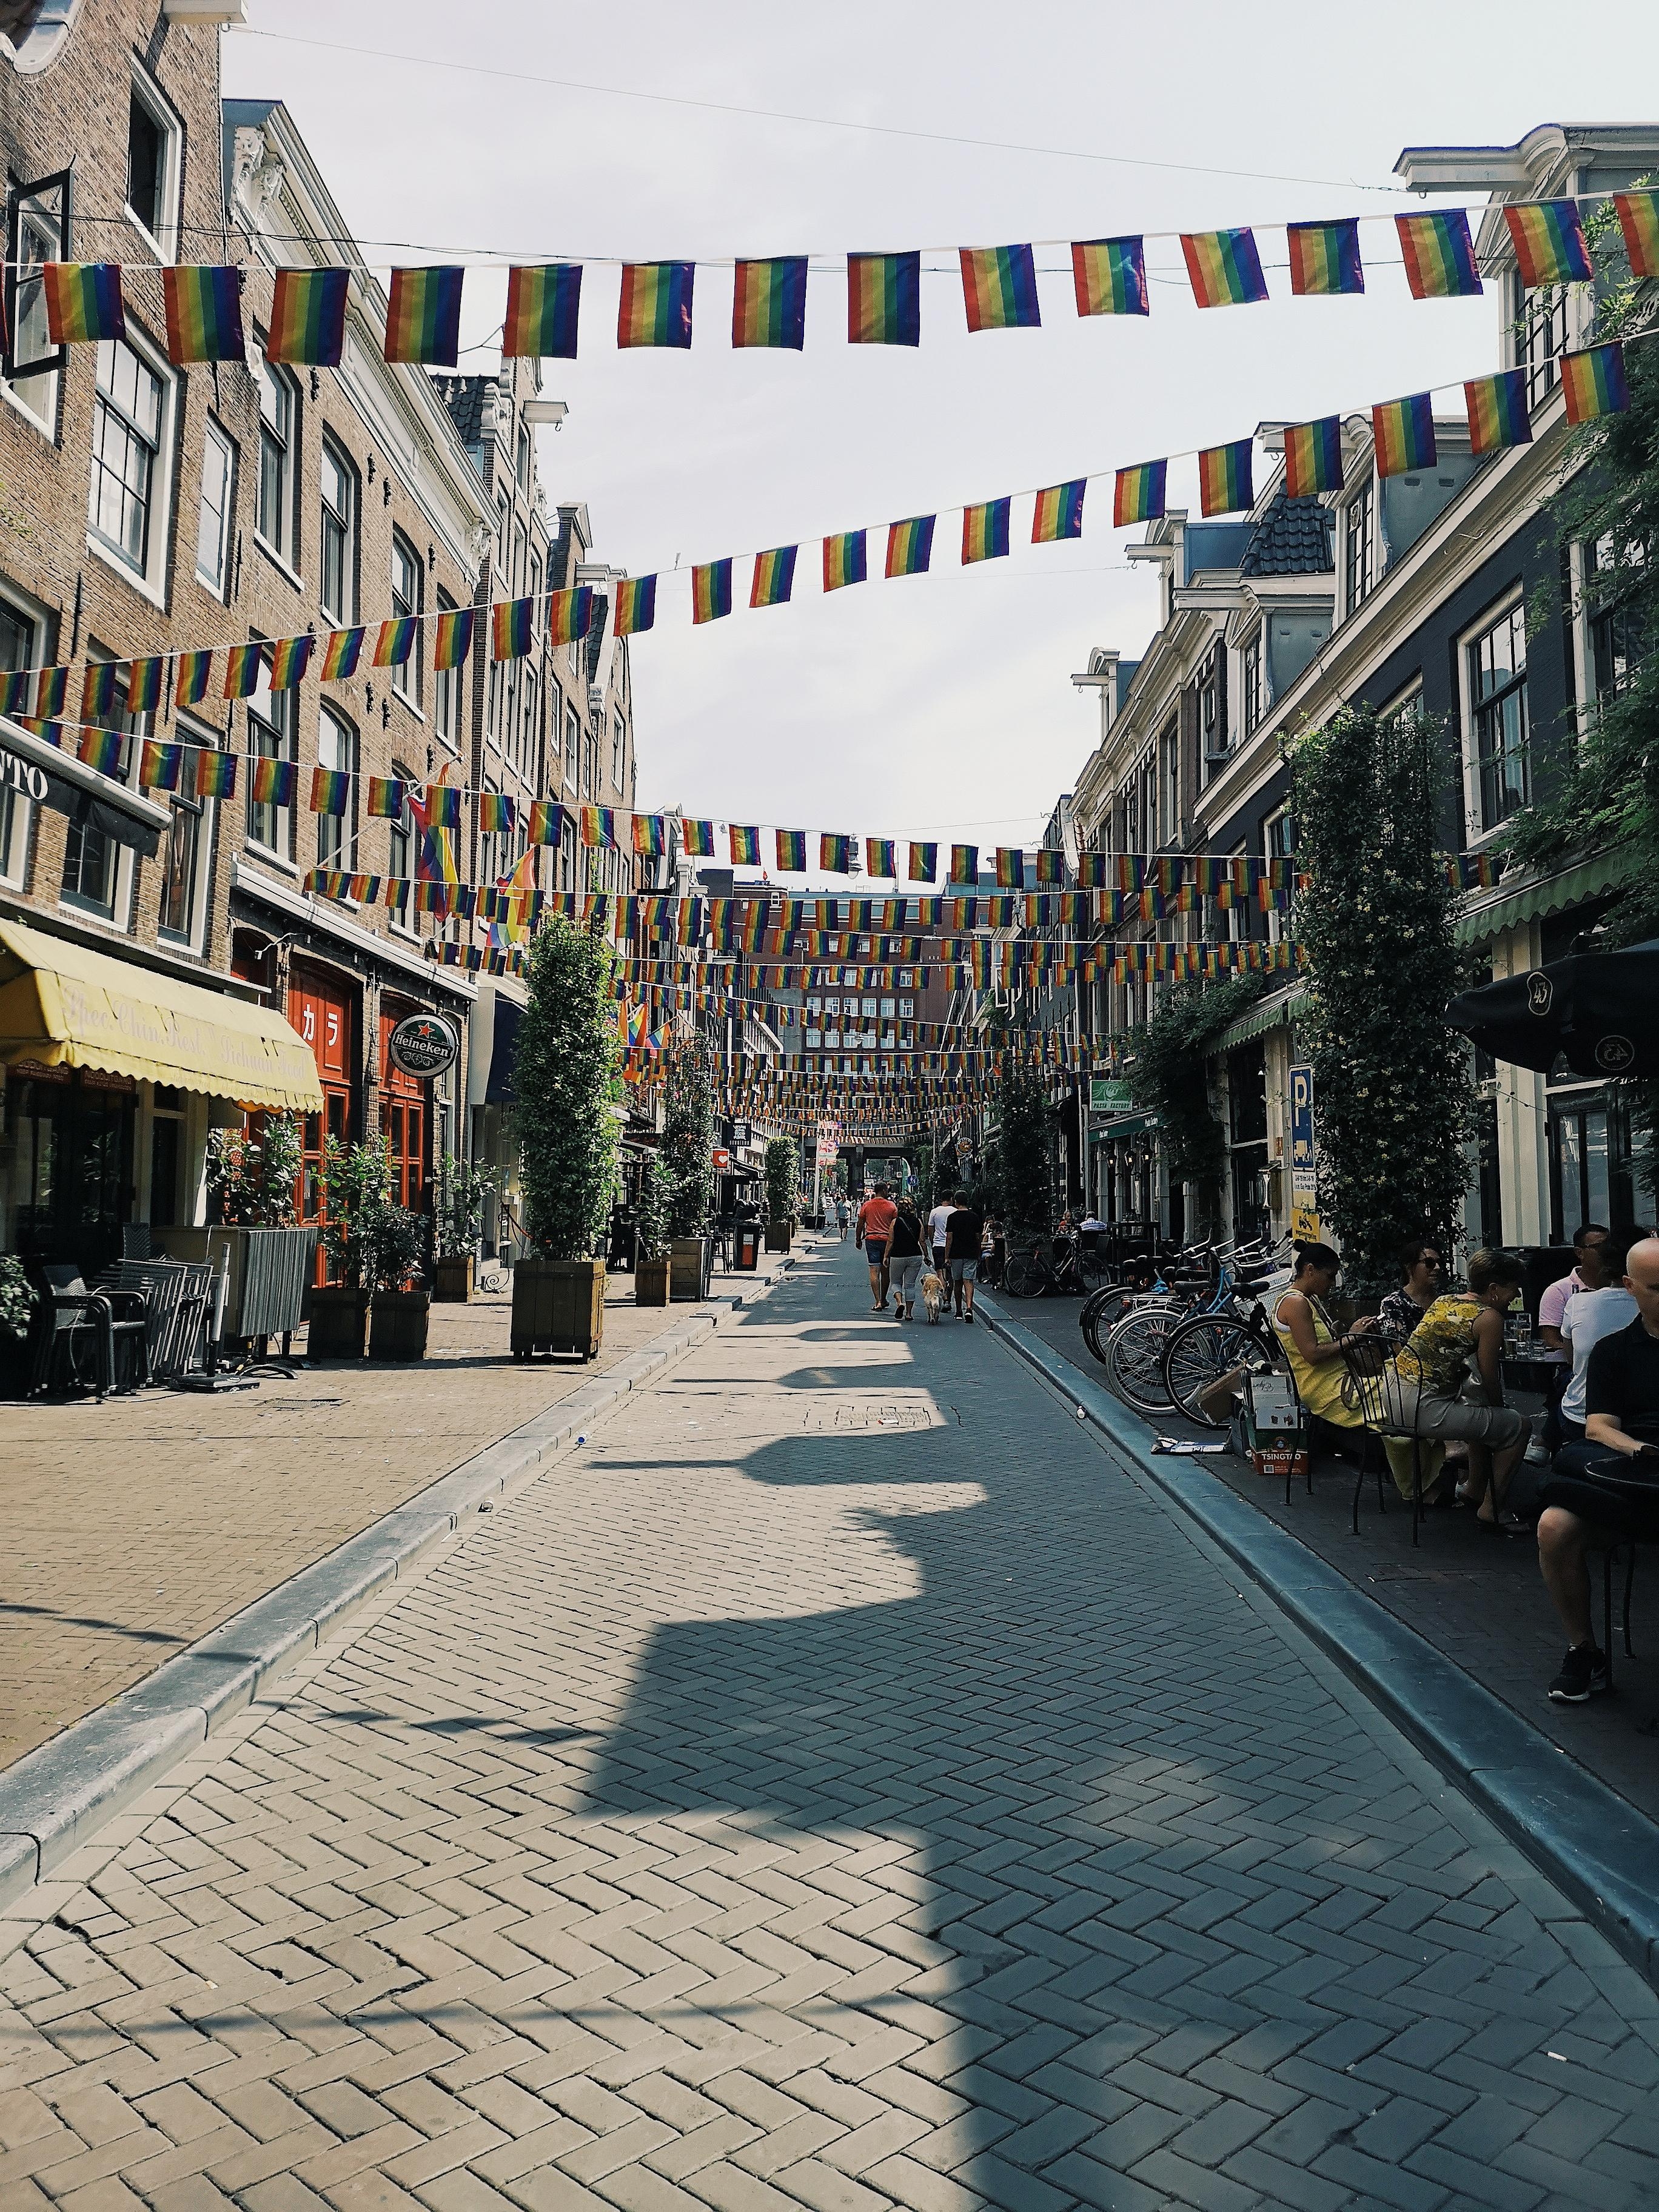 Proud #amsterdam #pridewalk

Diese Stadt ist wirklich eine meiner Lieblingsstädte! Bunt, multikulti und fortschrittlich